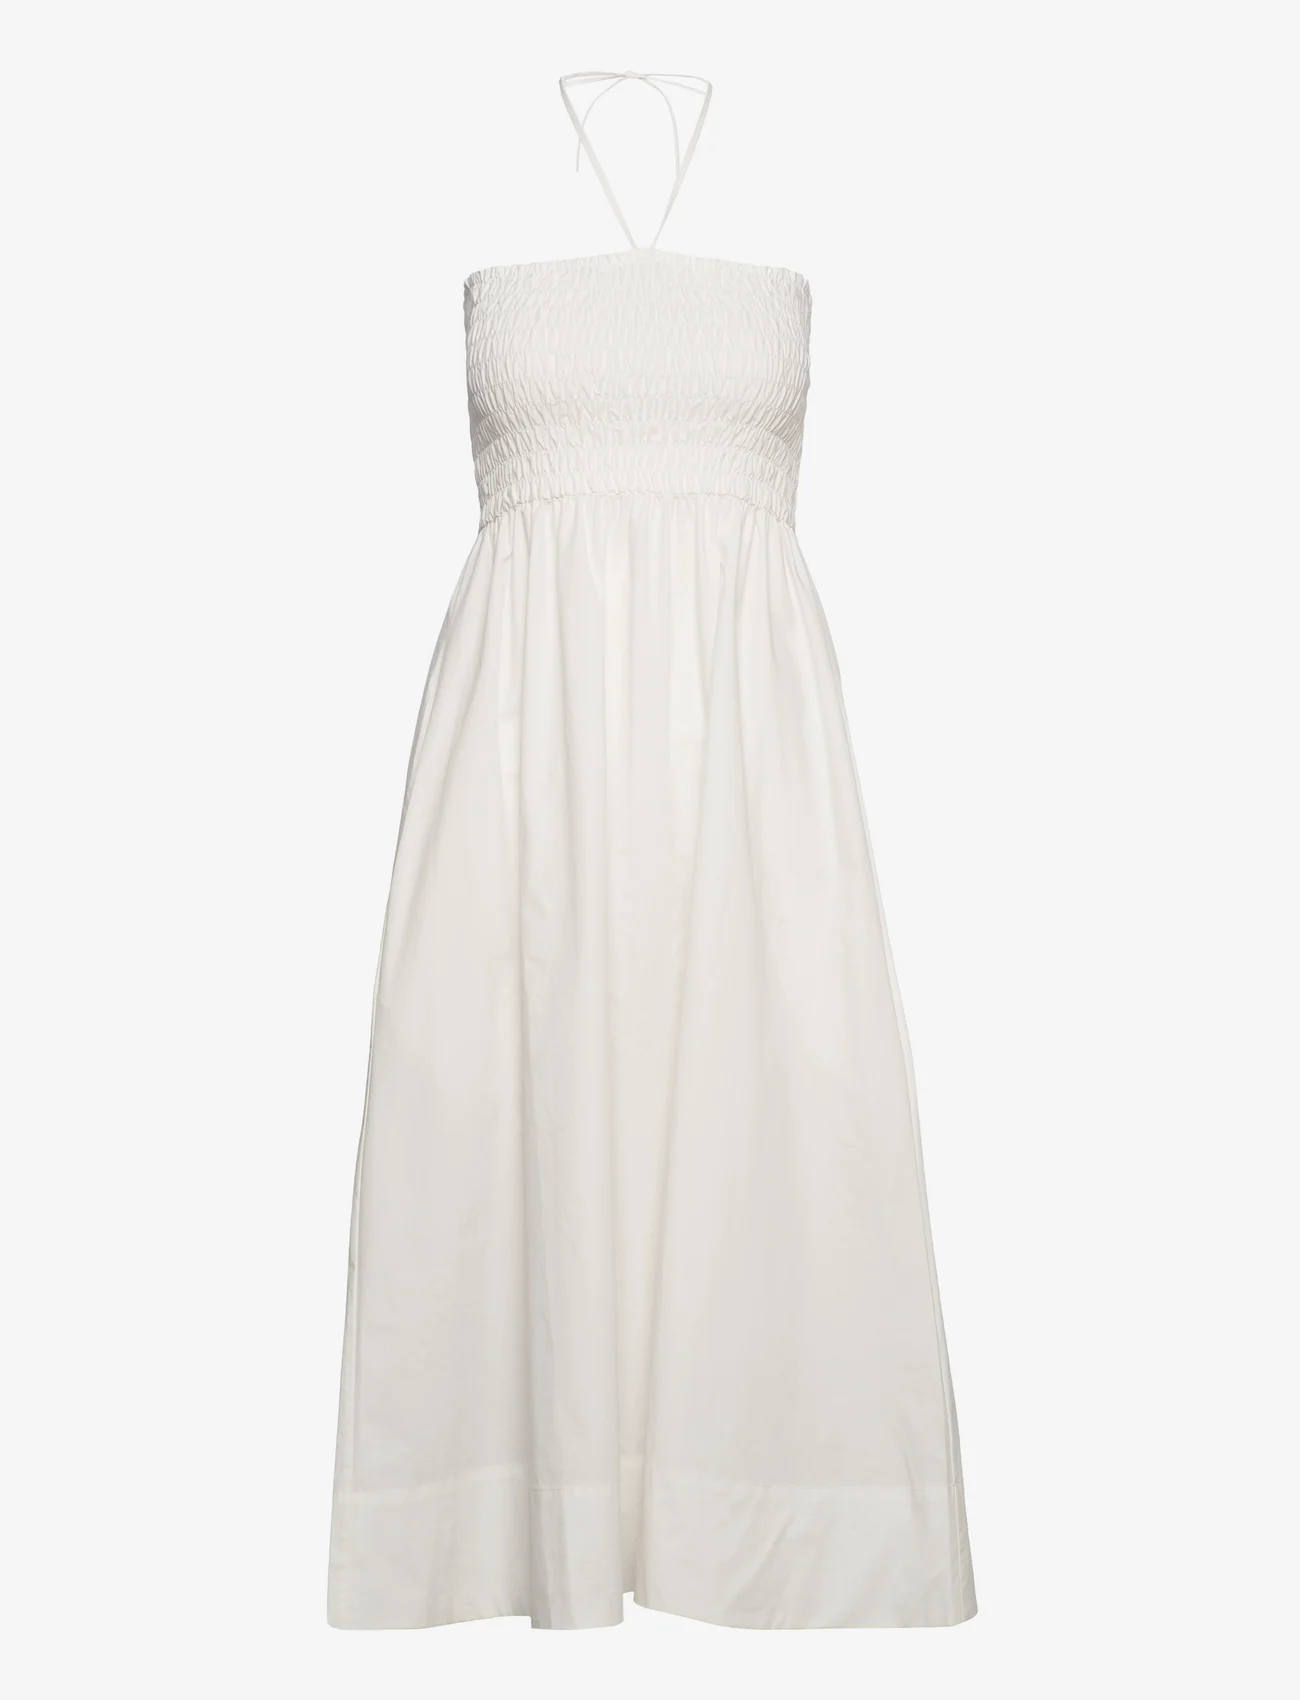 Cathrine Hammel - Poplin smocked dress - sommerkjoler - white - 0